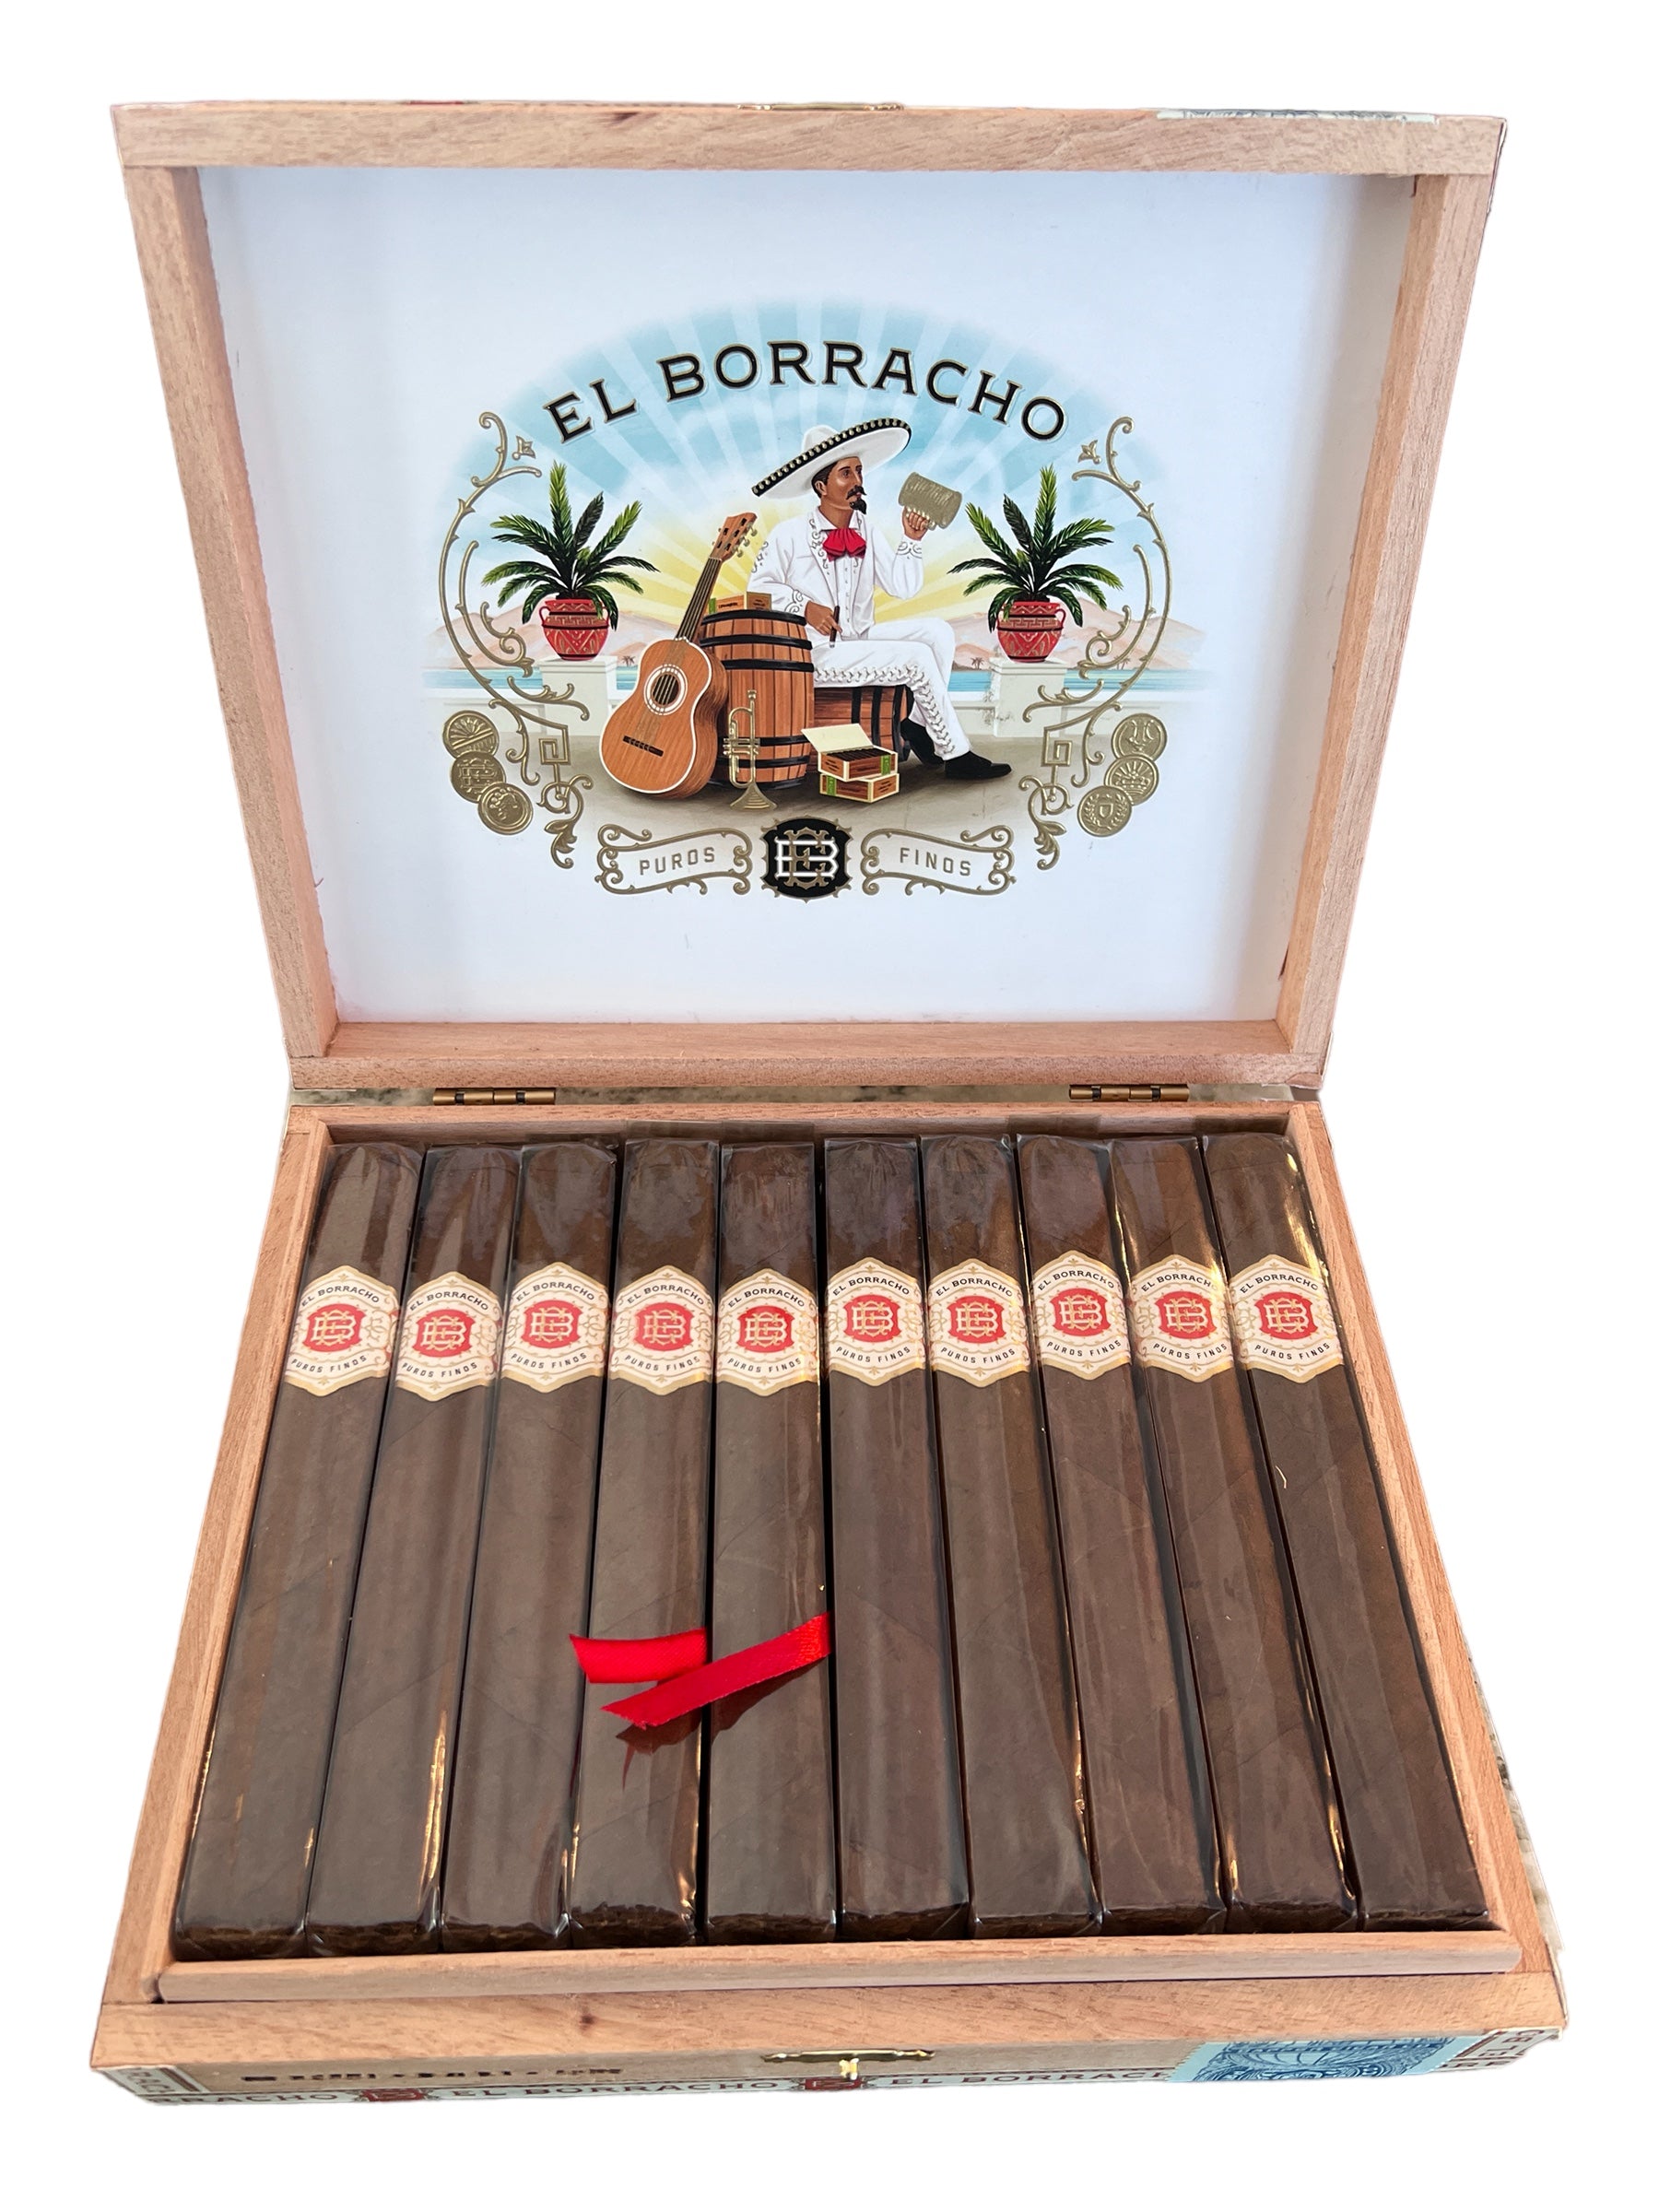 Dapper Cigars - El Borracho San Andres